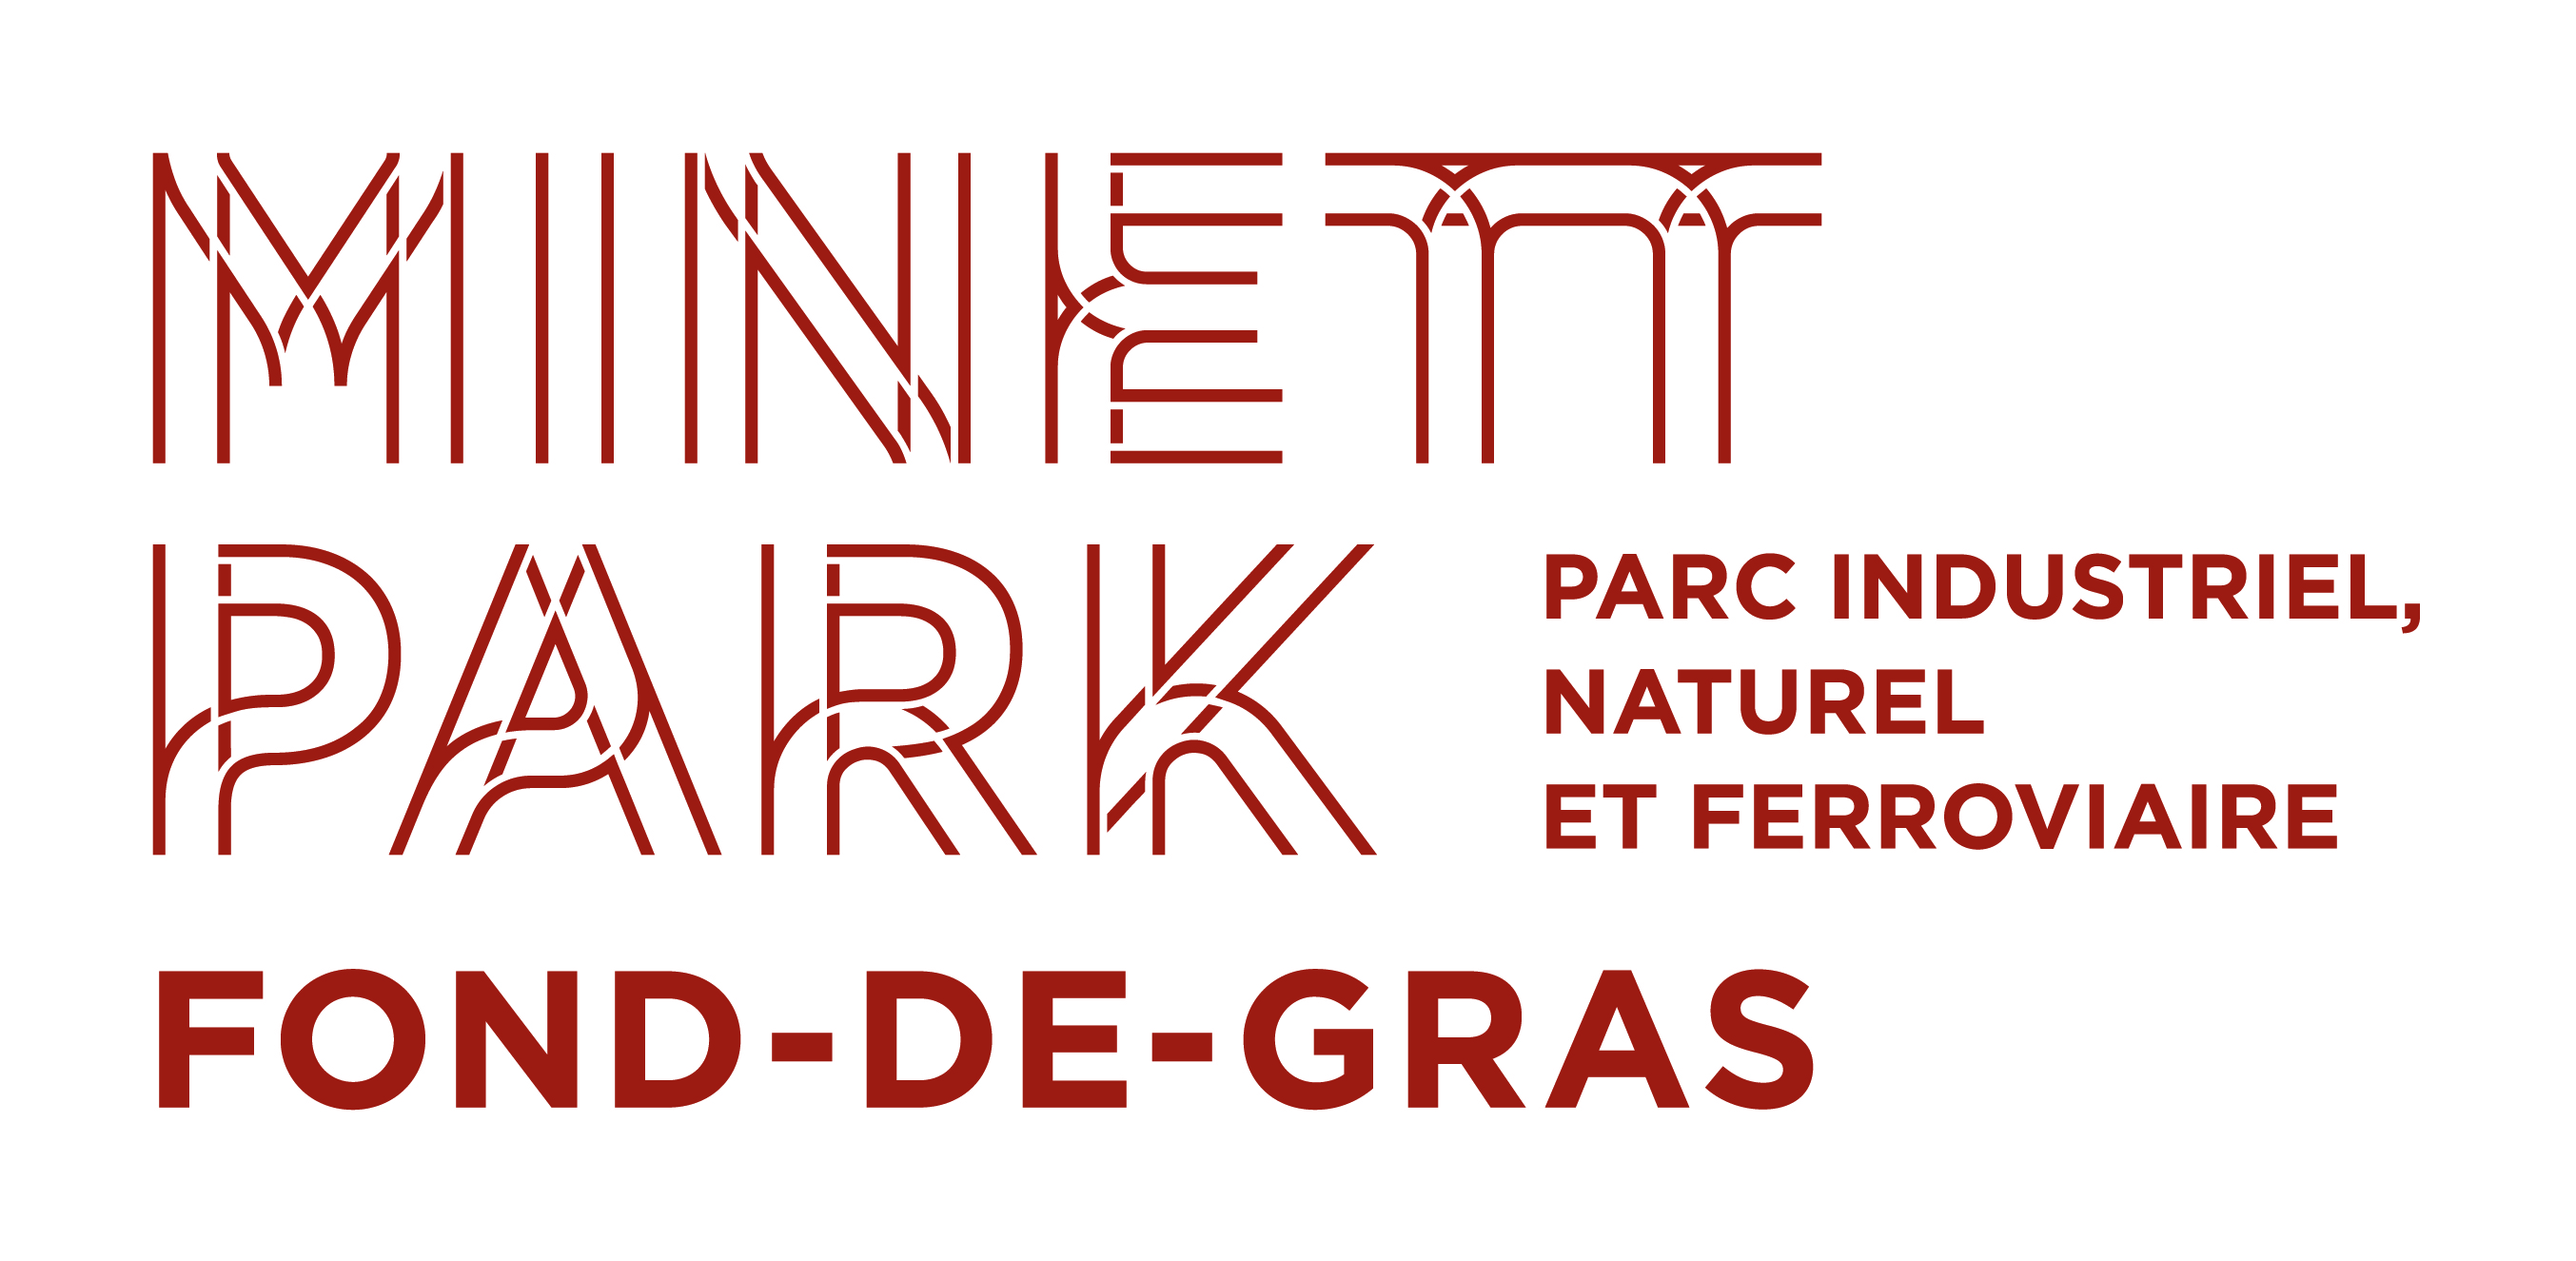 Minett Park Fond-de-Gras